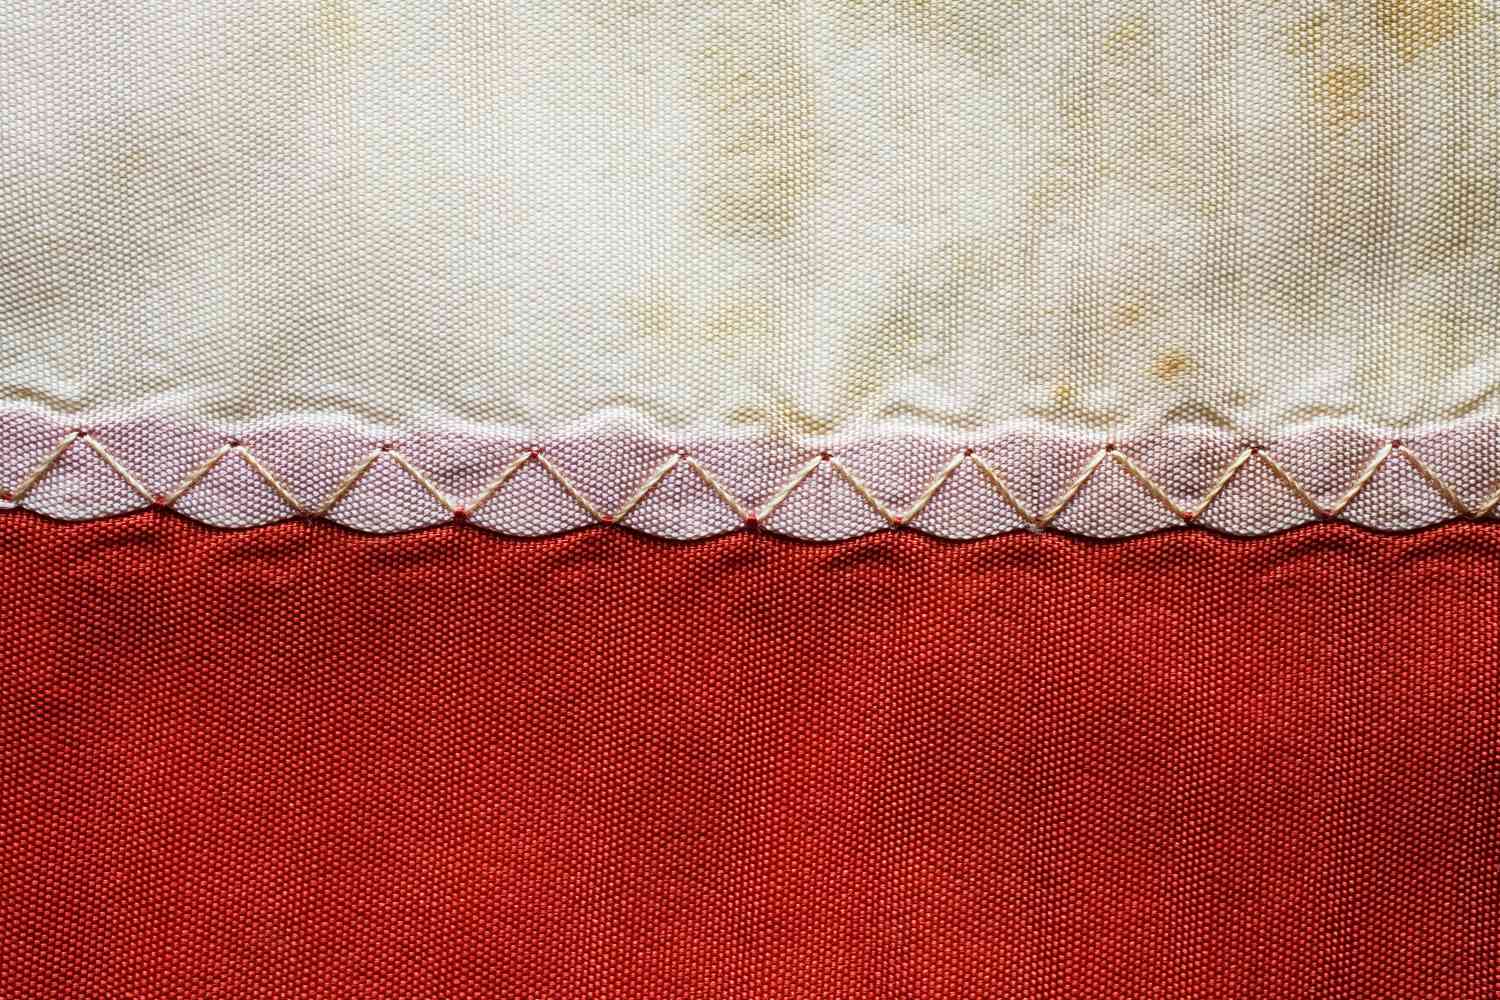 装饰曲折的缝上大量棉布旧国旗的特写镜头